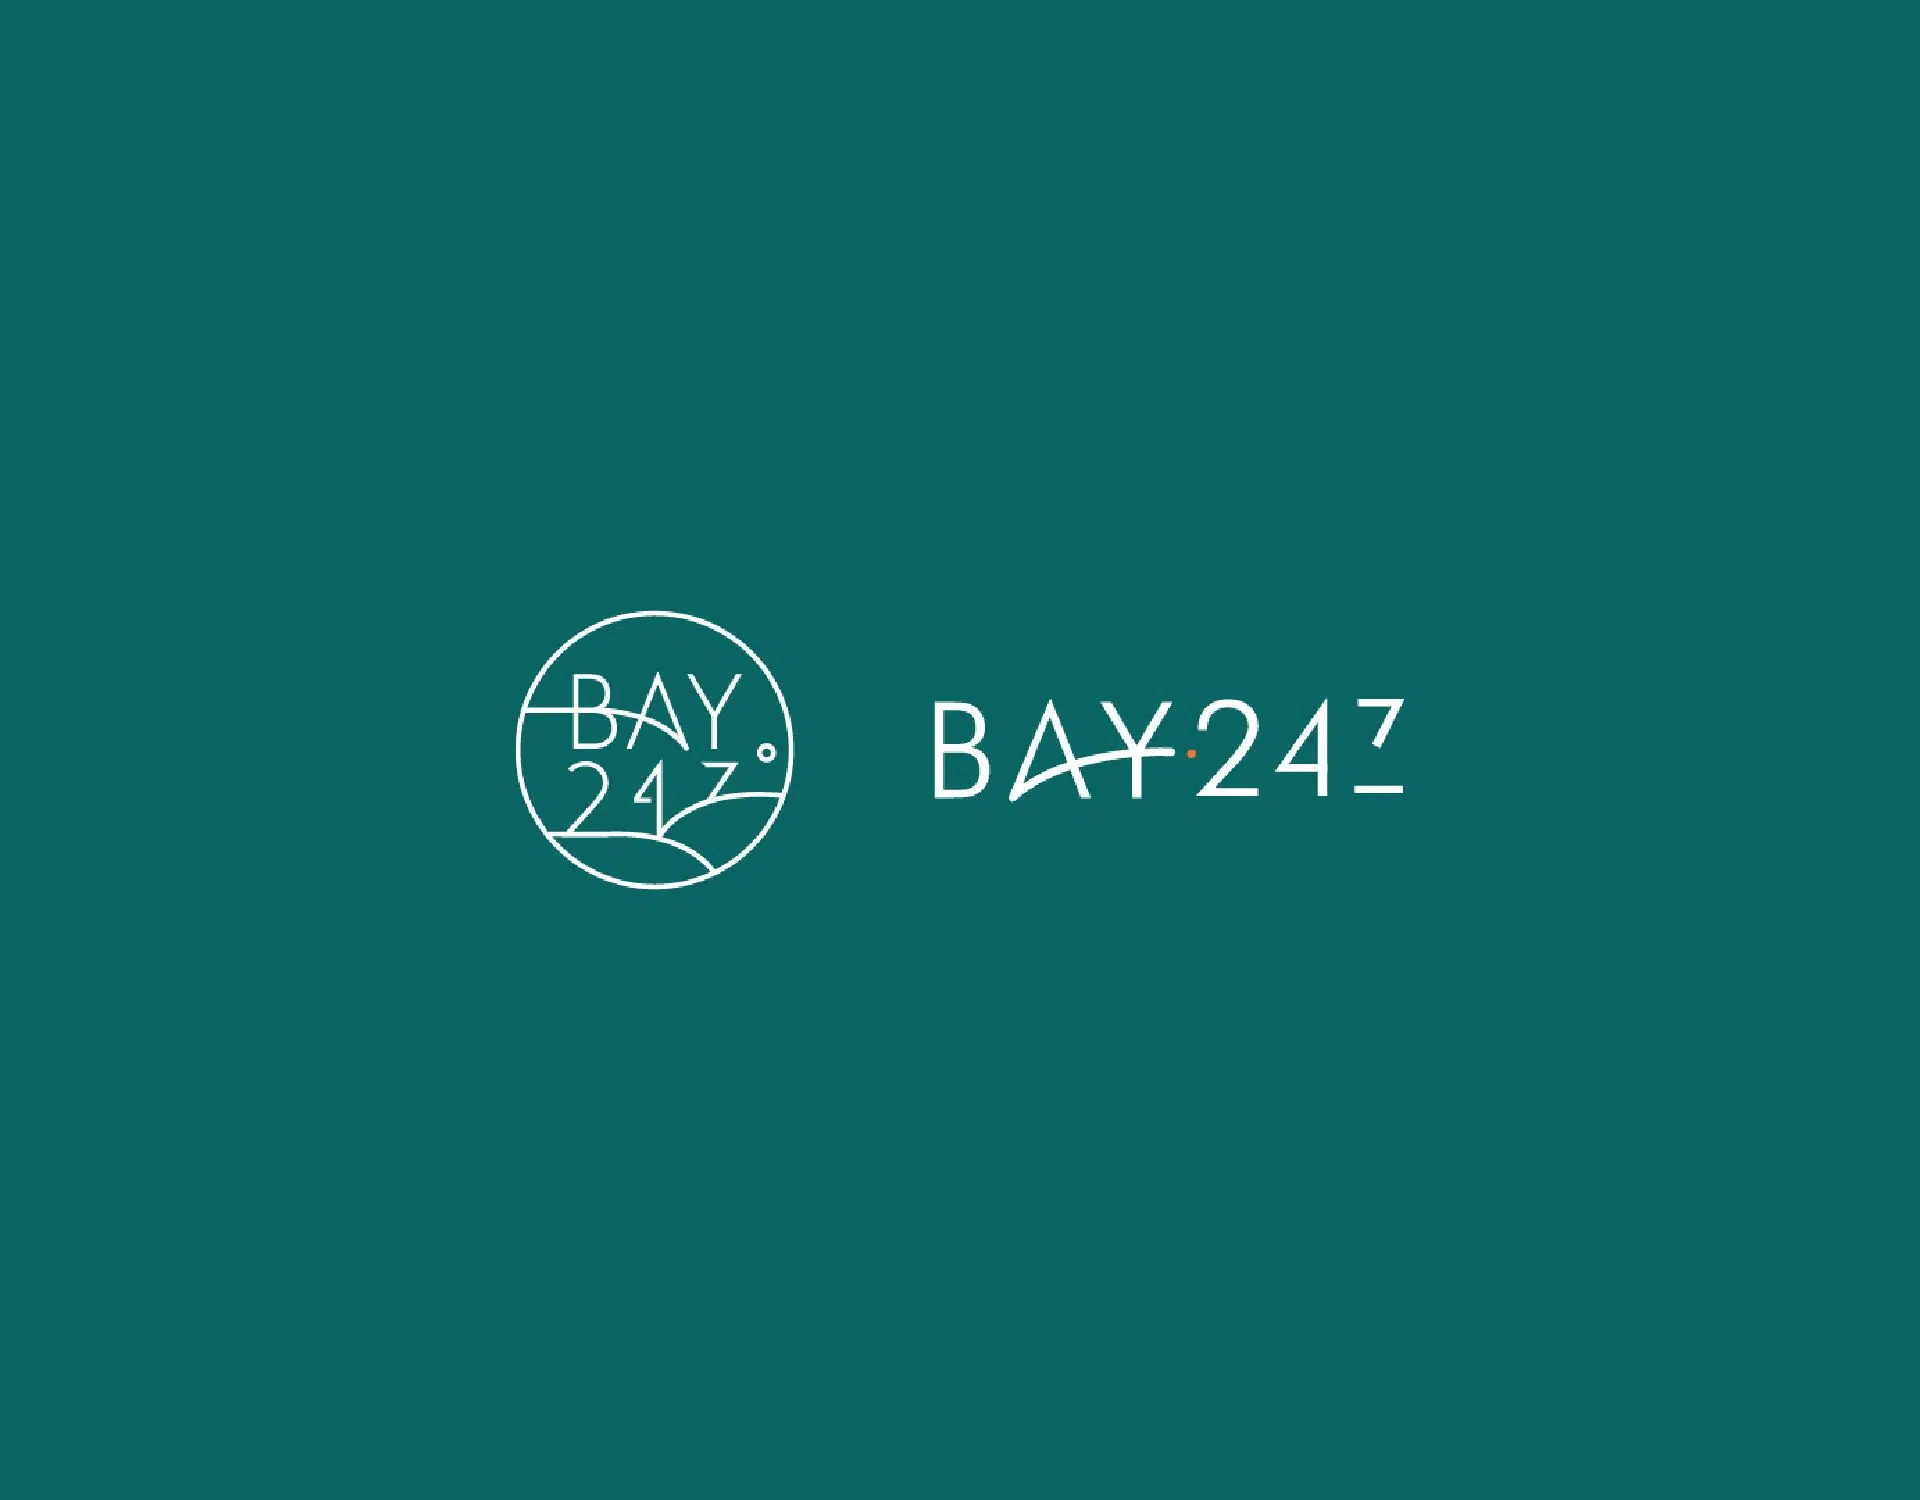 Bay 247